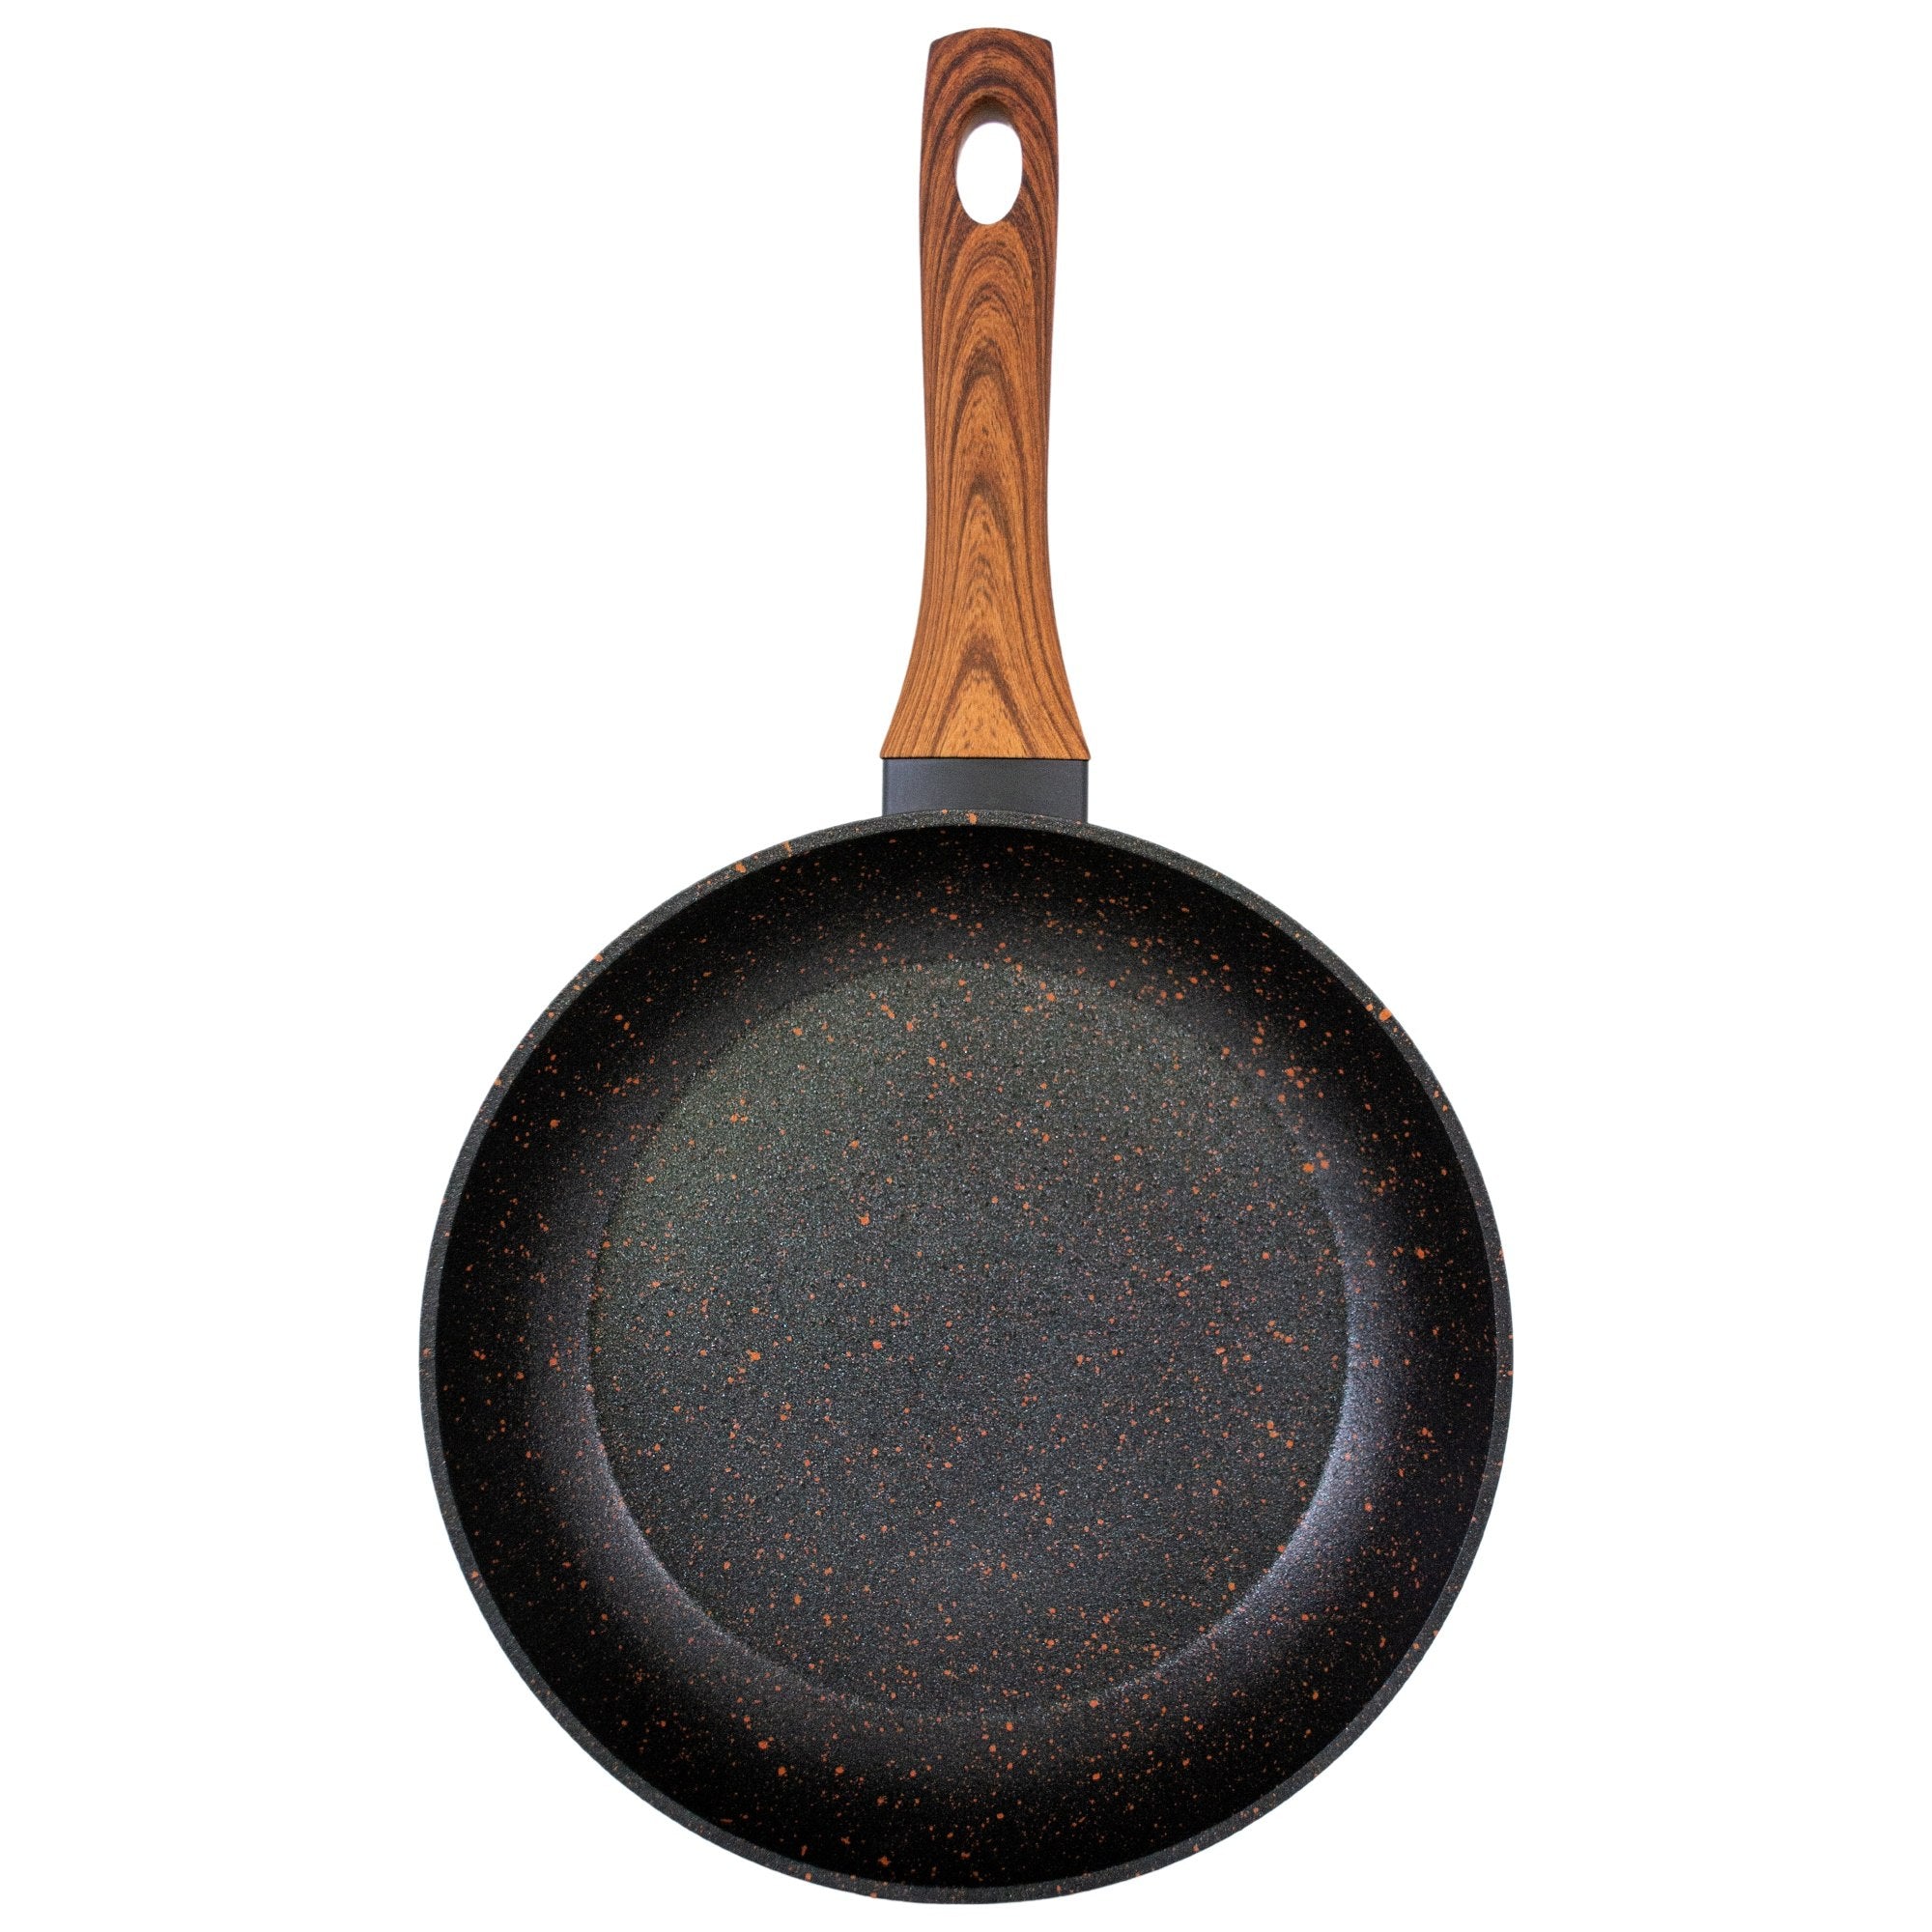 Universal frying pan 26 cm RockWood